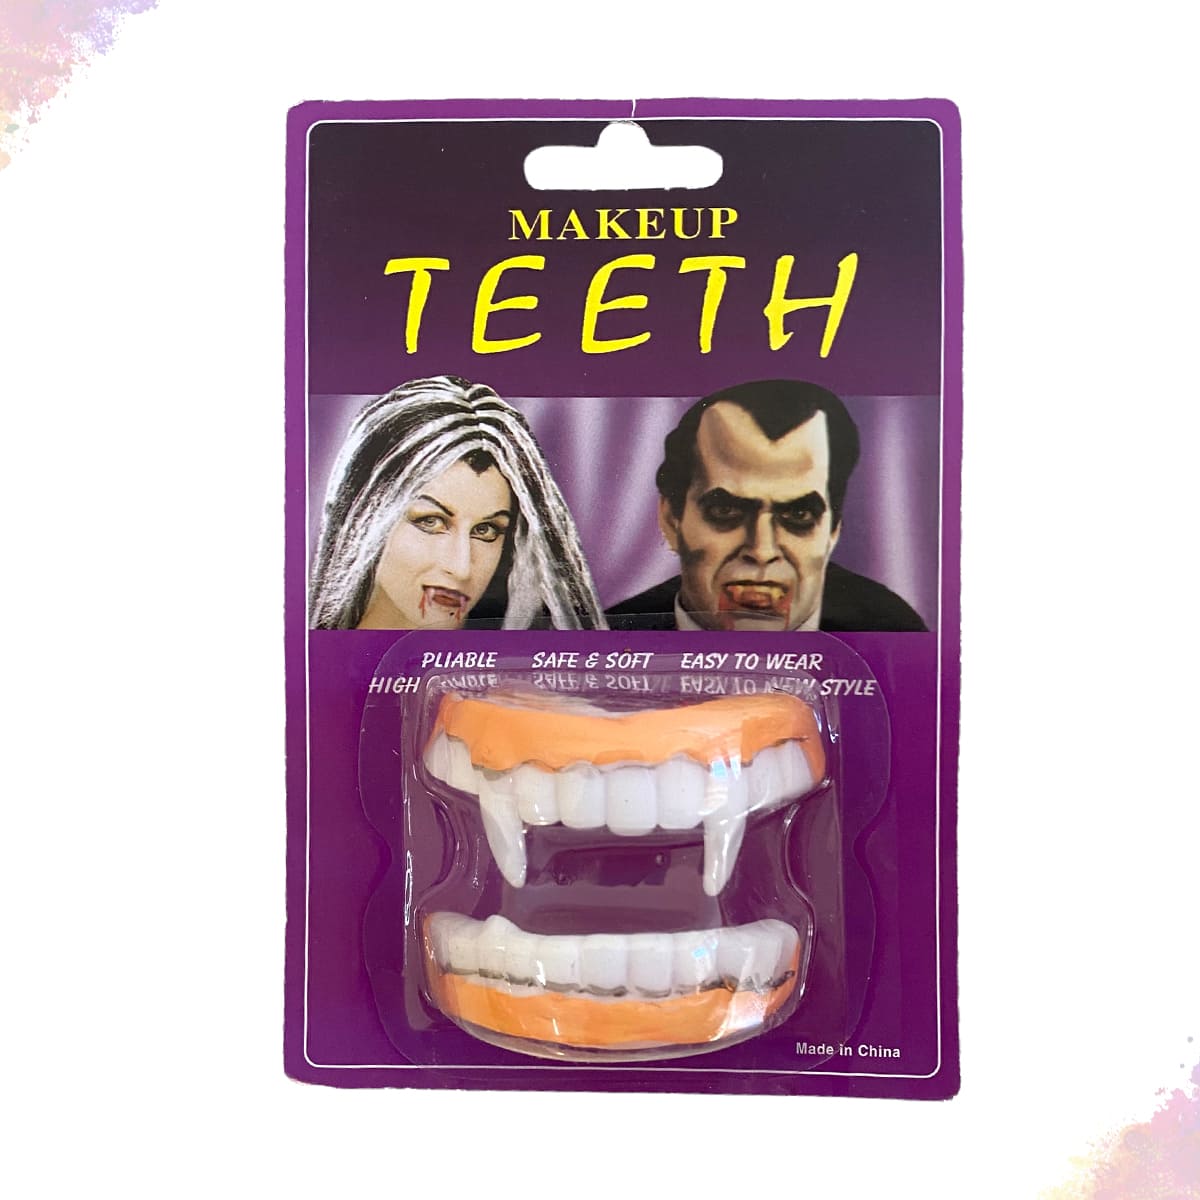 Dentes de vampiro: moda entre adolescentes no TikTok causa danos à